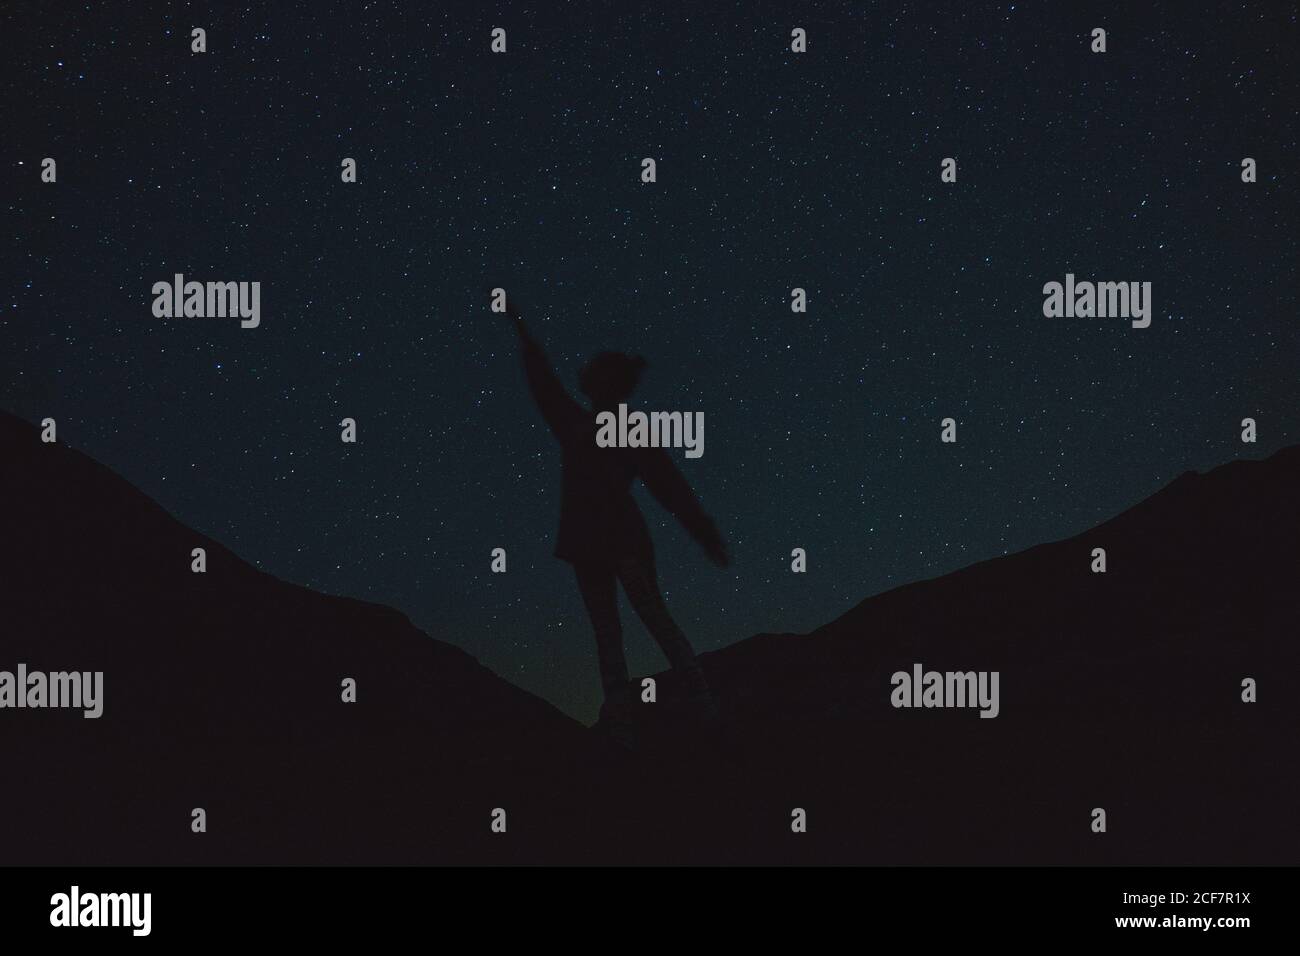 Silhouette d'une personne sur une nuit étoilée Photo Stock - Alamy